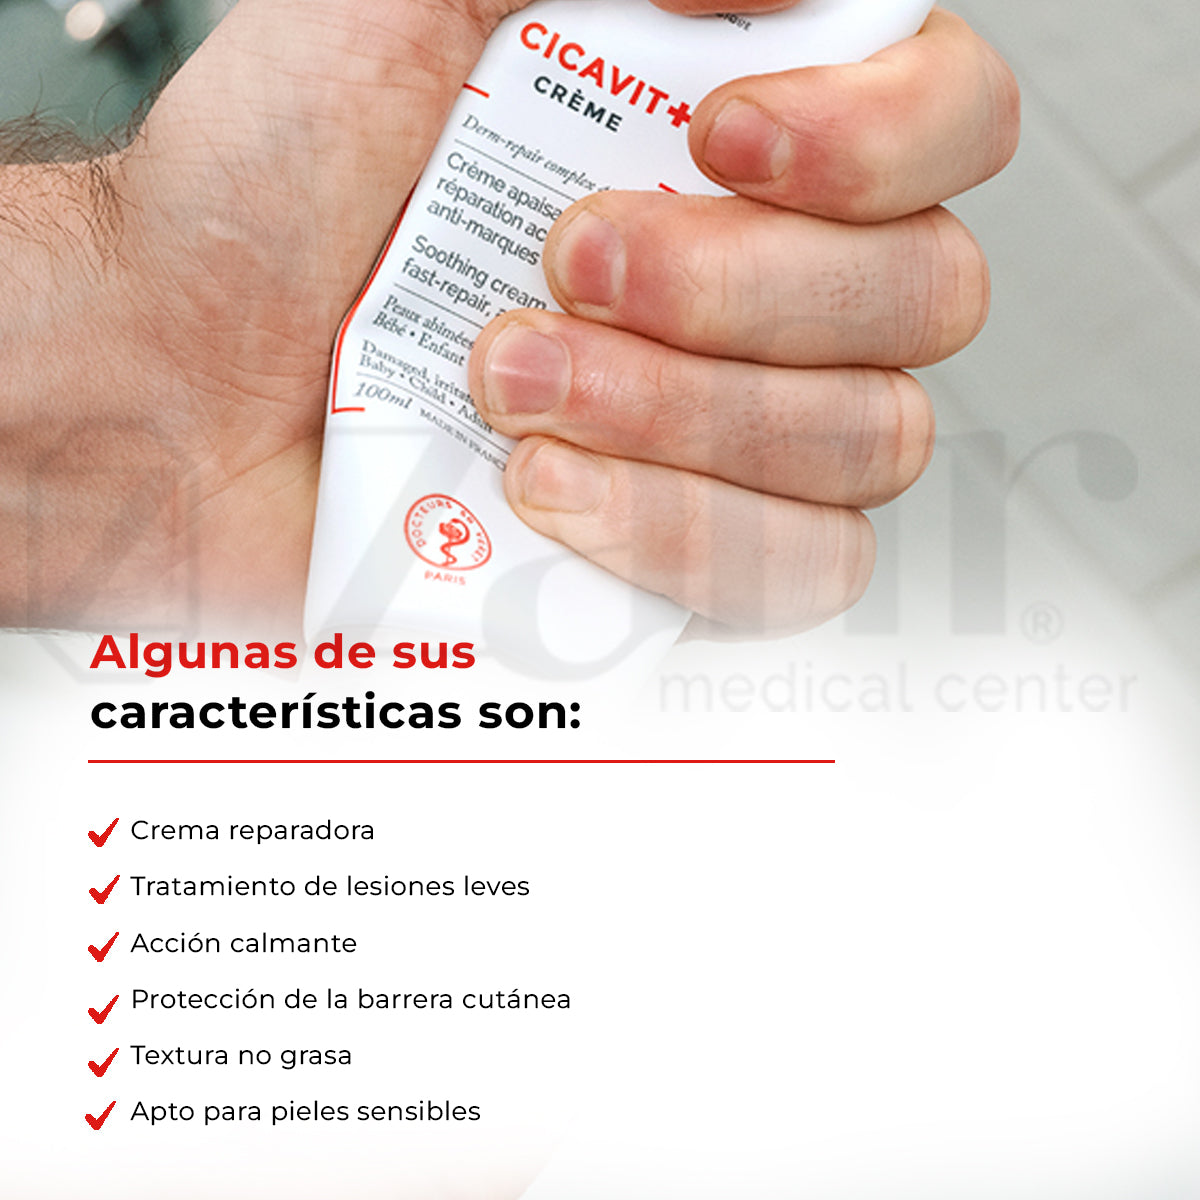 Crema Calmante Cicavit+ Crema Svr 40ml Para Piel Dañada Sensible - Zafir Medical Center